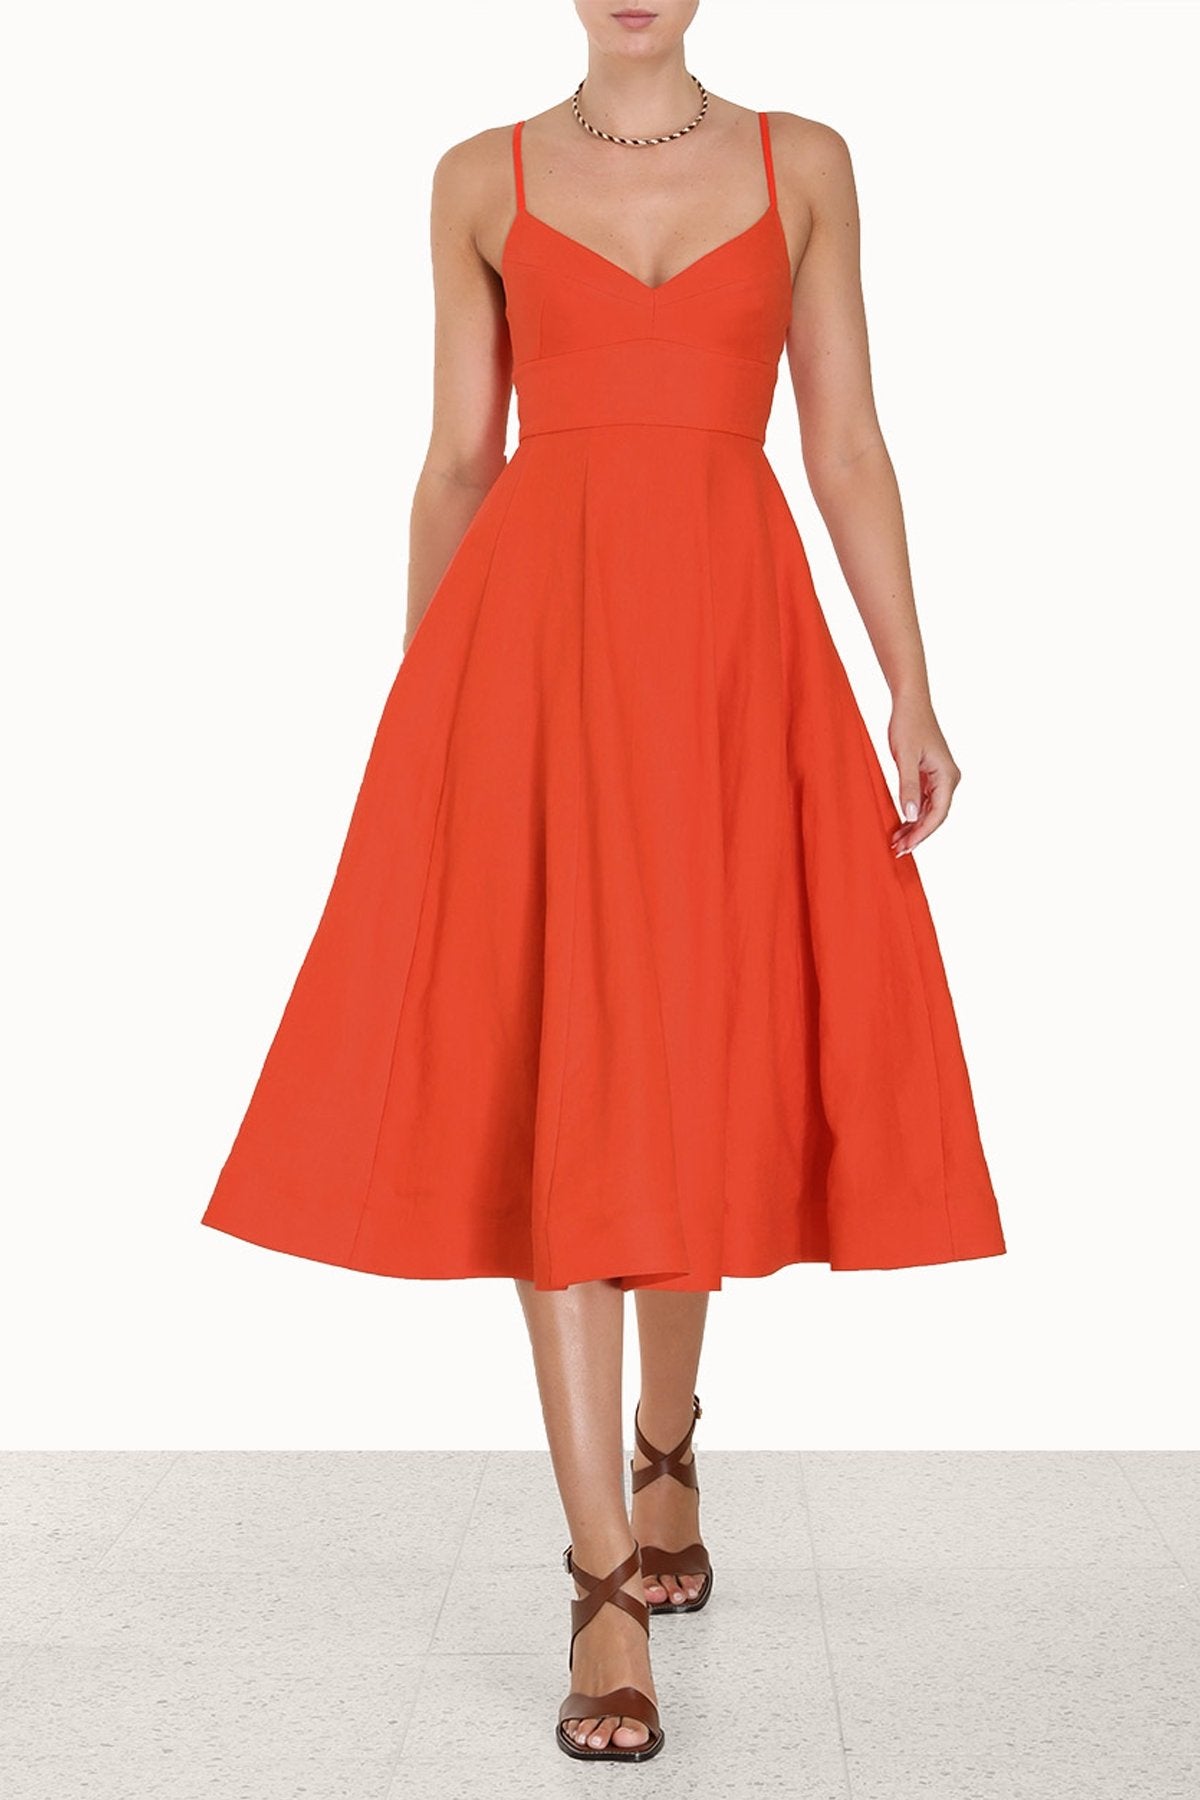 Wonderland Picnic Dress in Red - shop-olivia.com